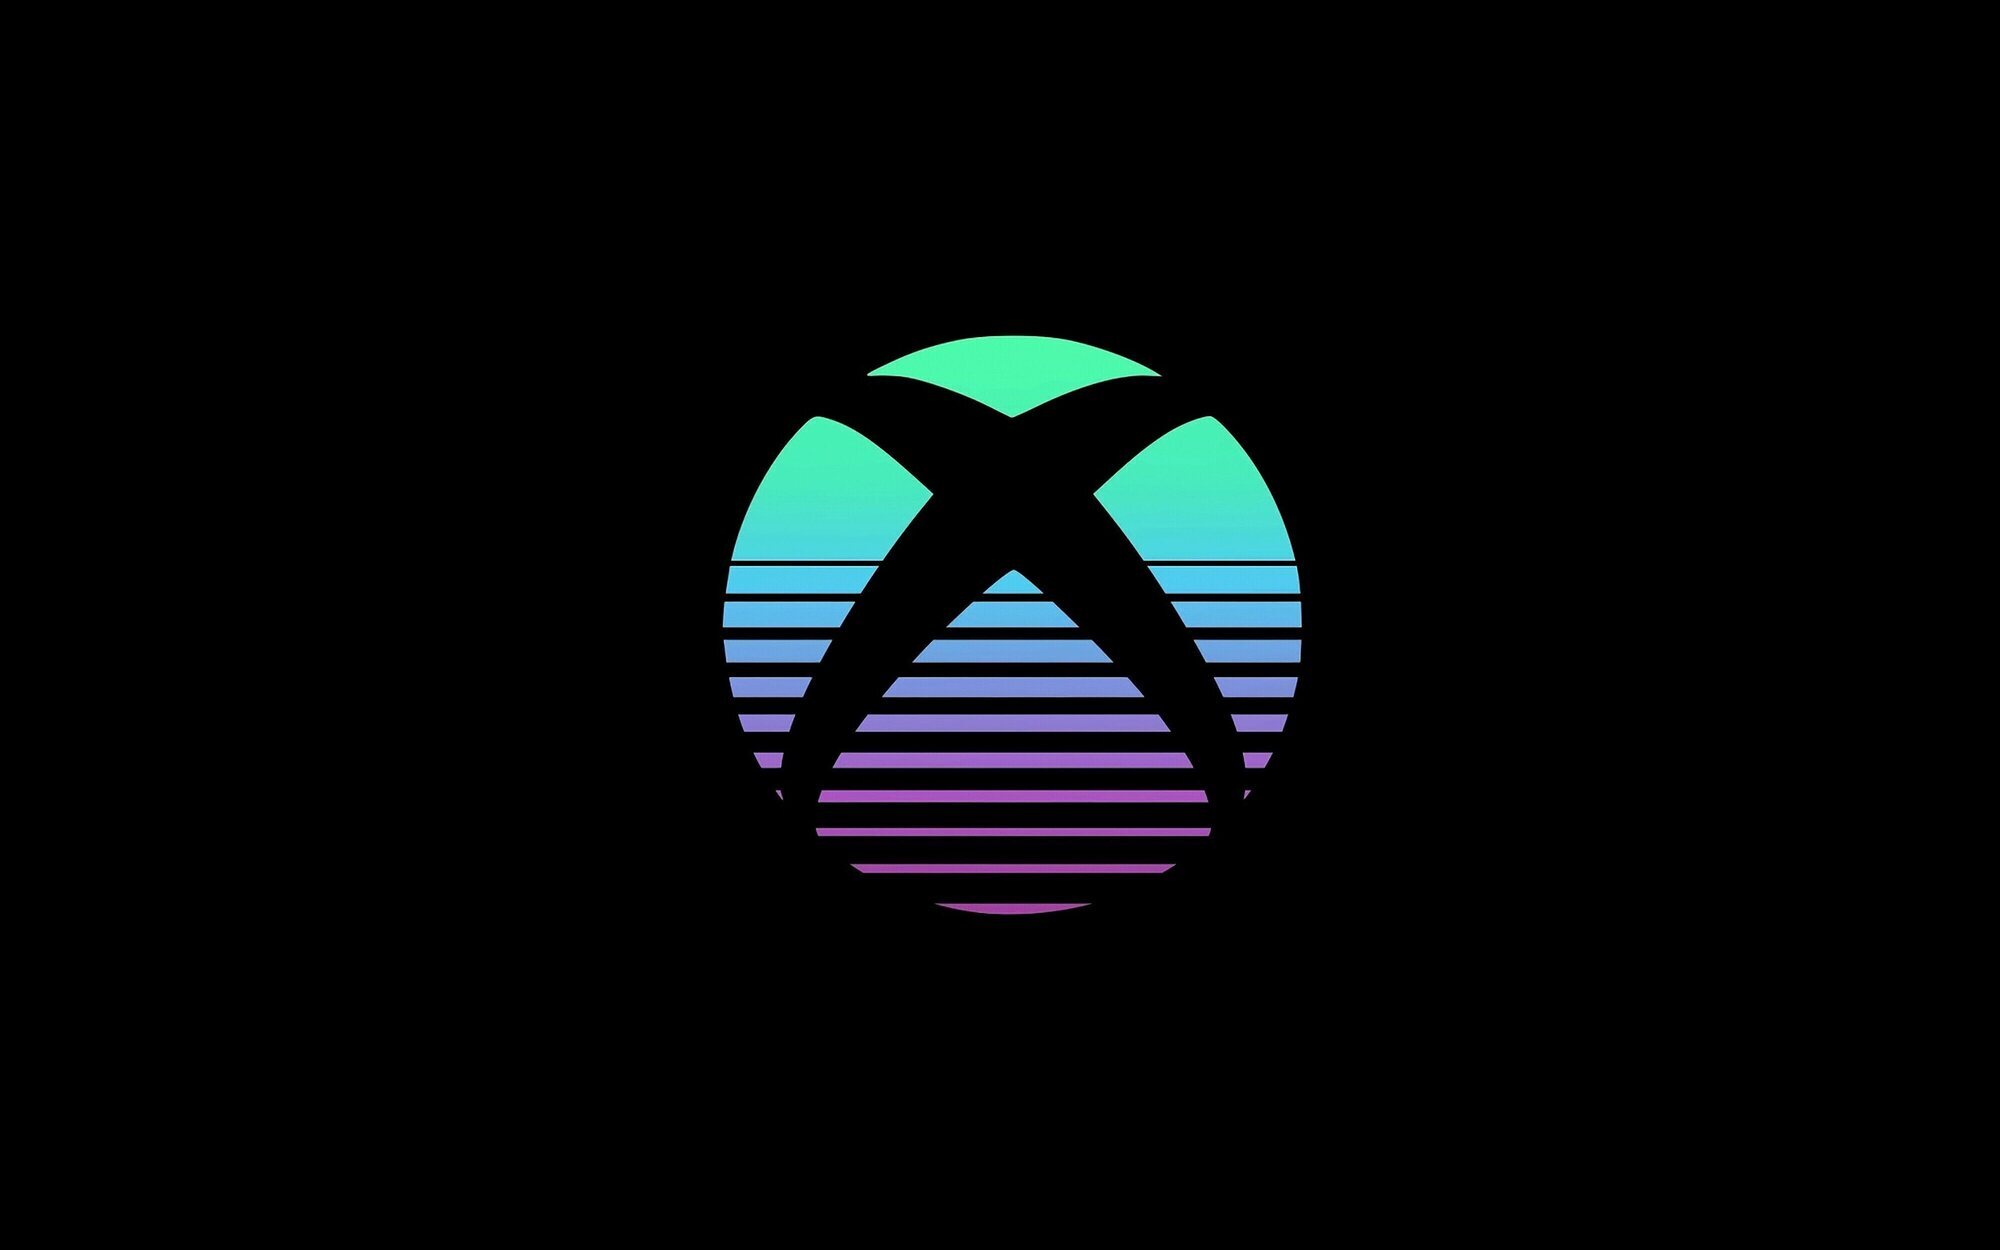 Xbox pretende lanzar 5 o más juegos nuevos durante el año fiscal 2023